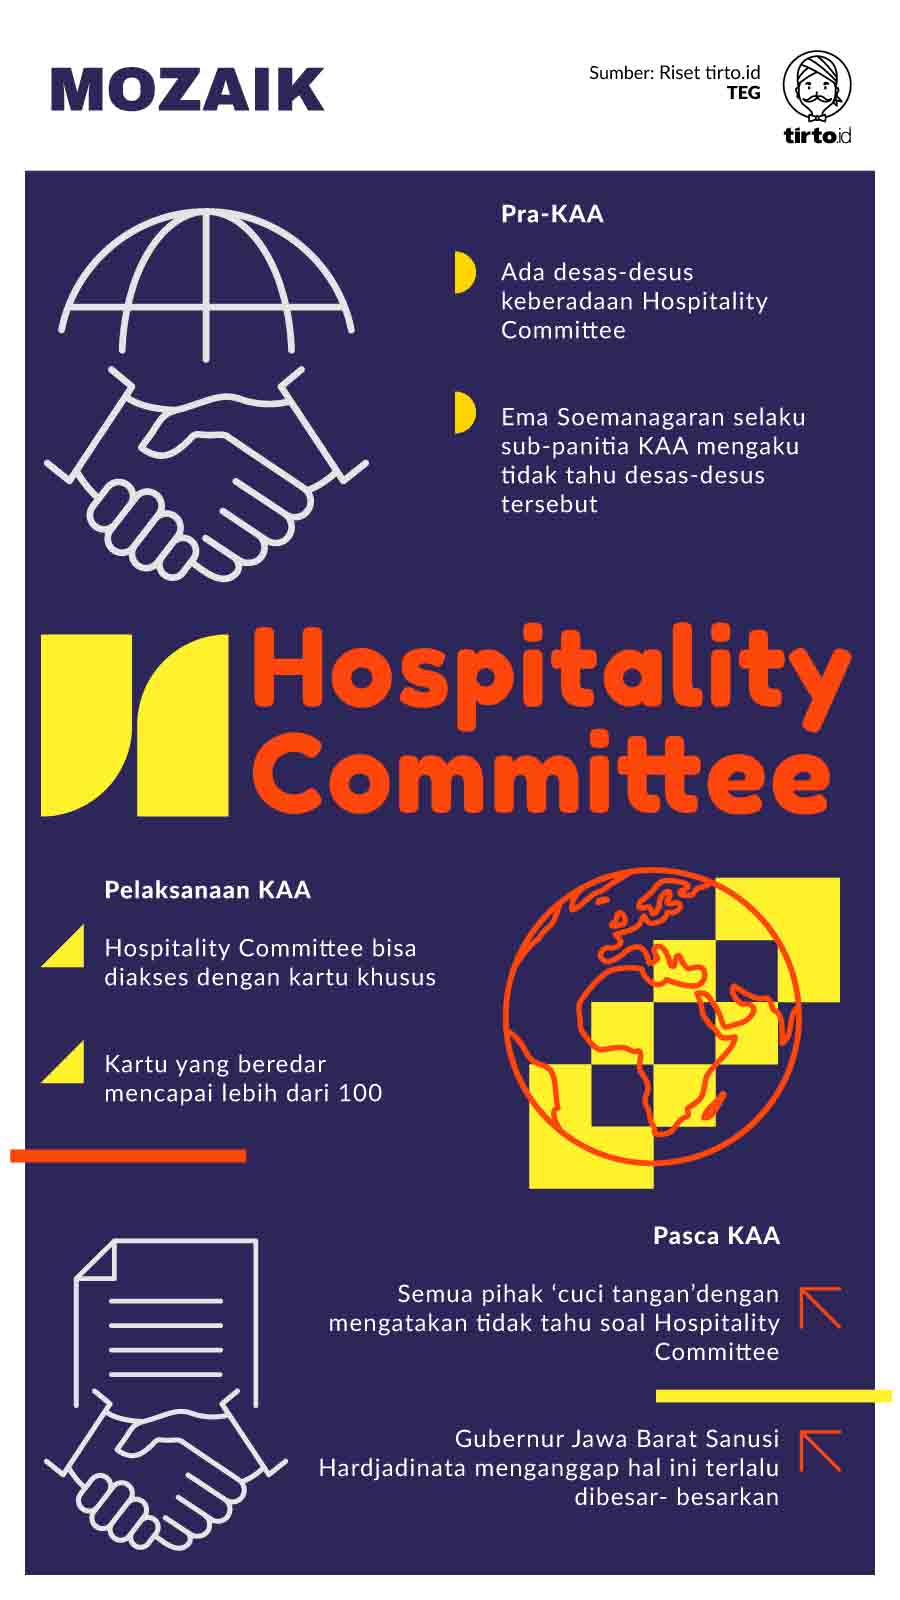 Infografik Mozaik Hospitality Committe